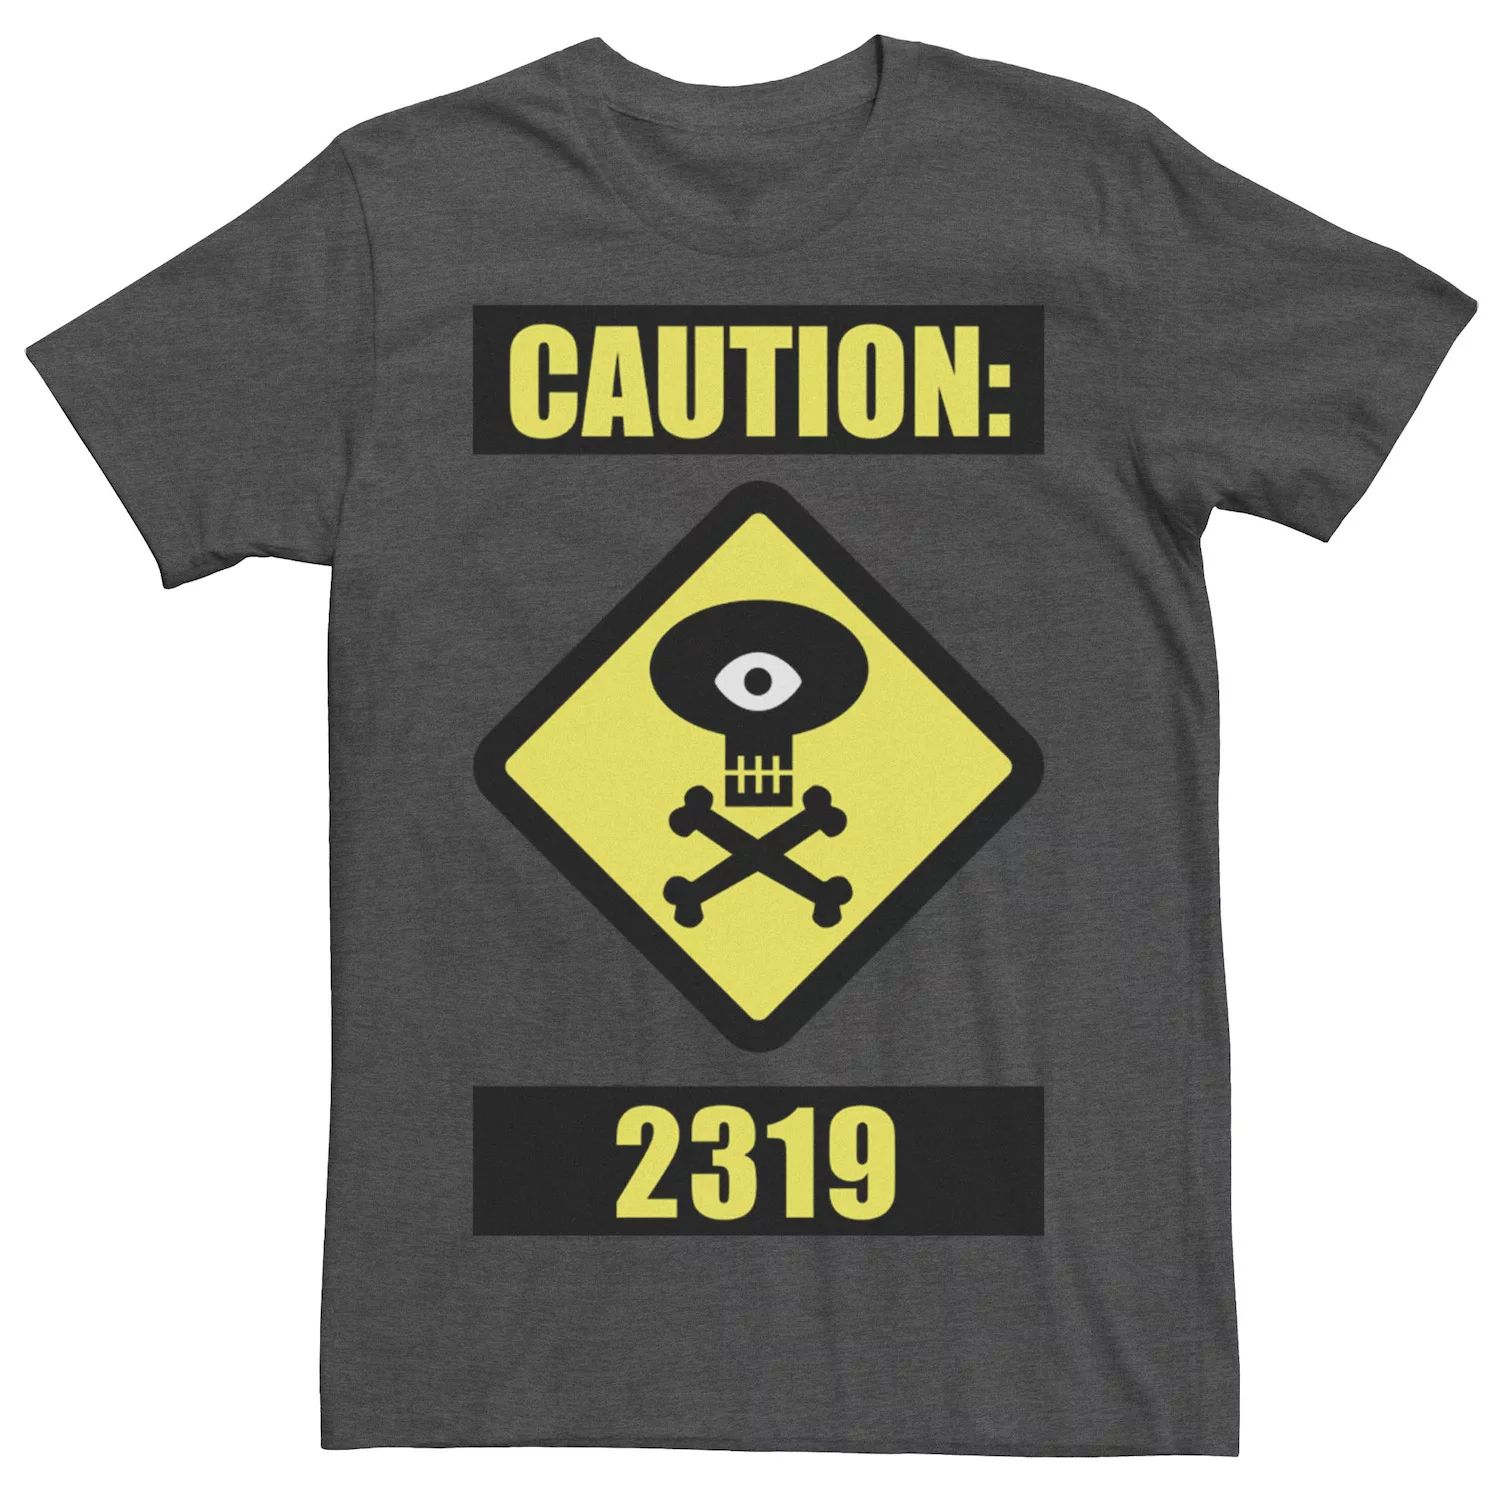 цена Мужская футболка Disney/Pixar Monsters University Caution 2319 Disney / Pixar